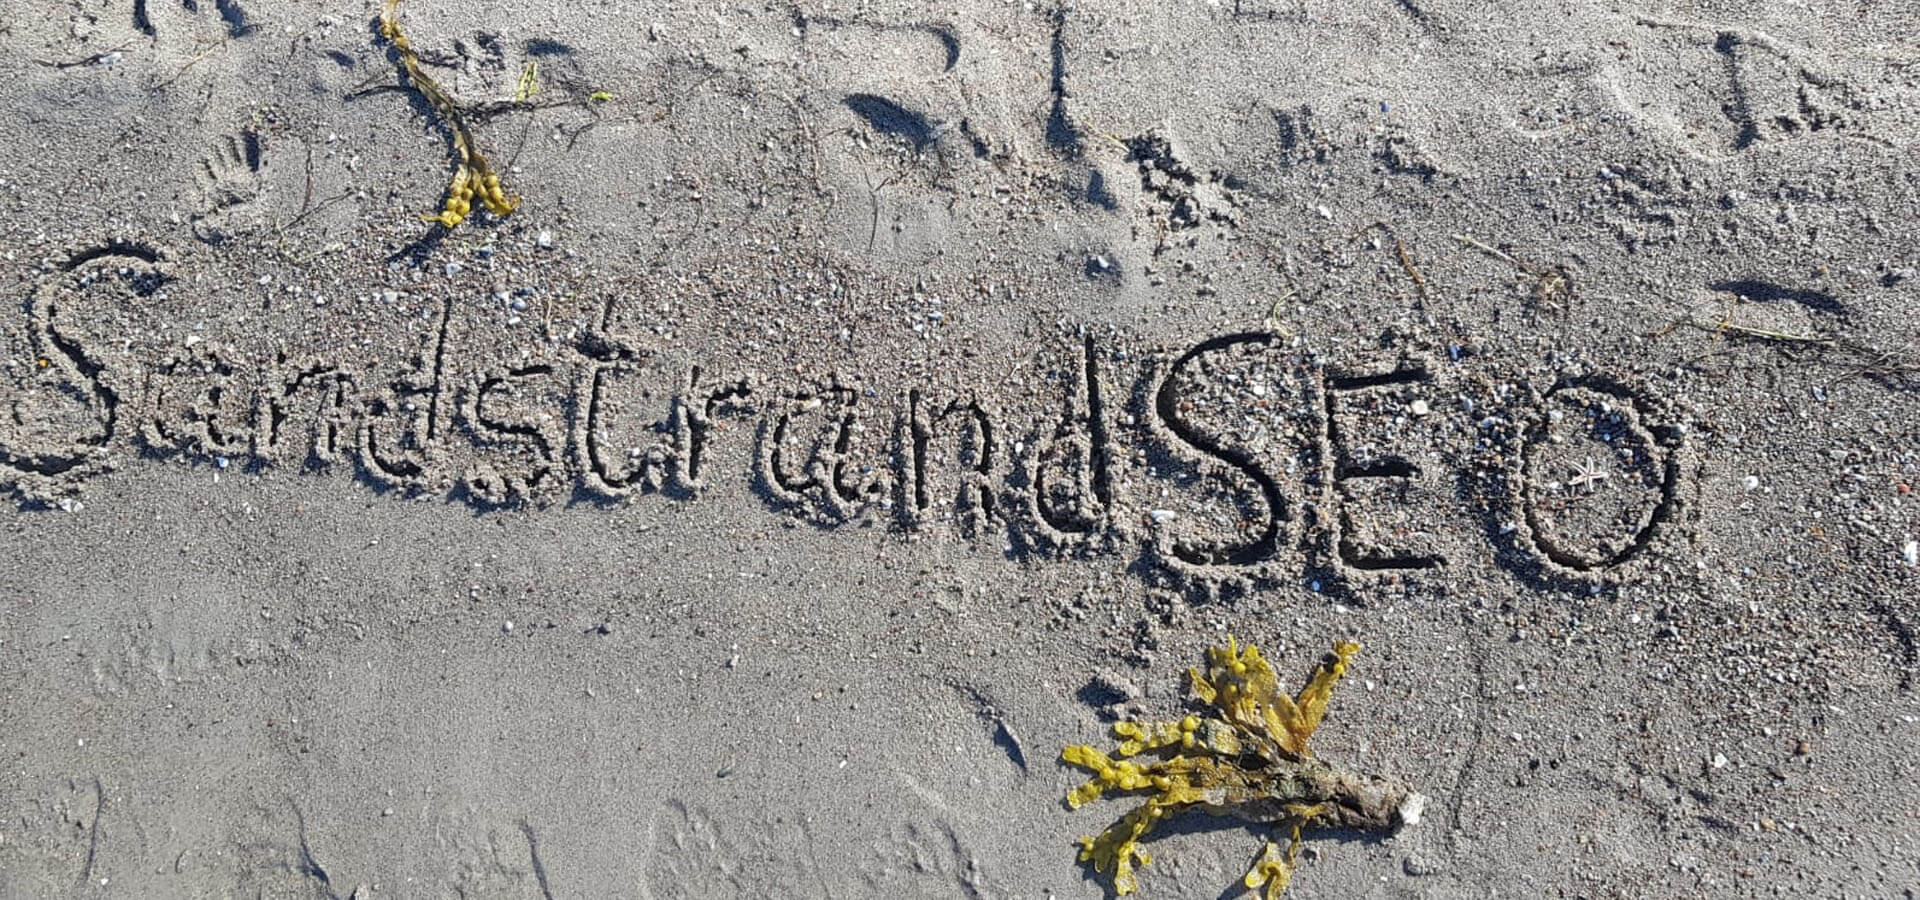 SandstrandSEO Alge